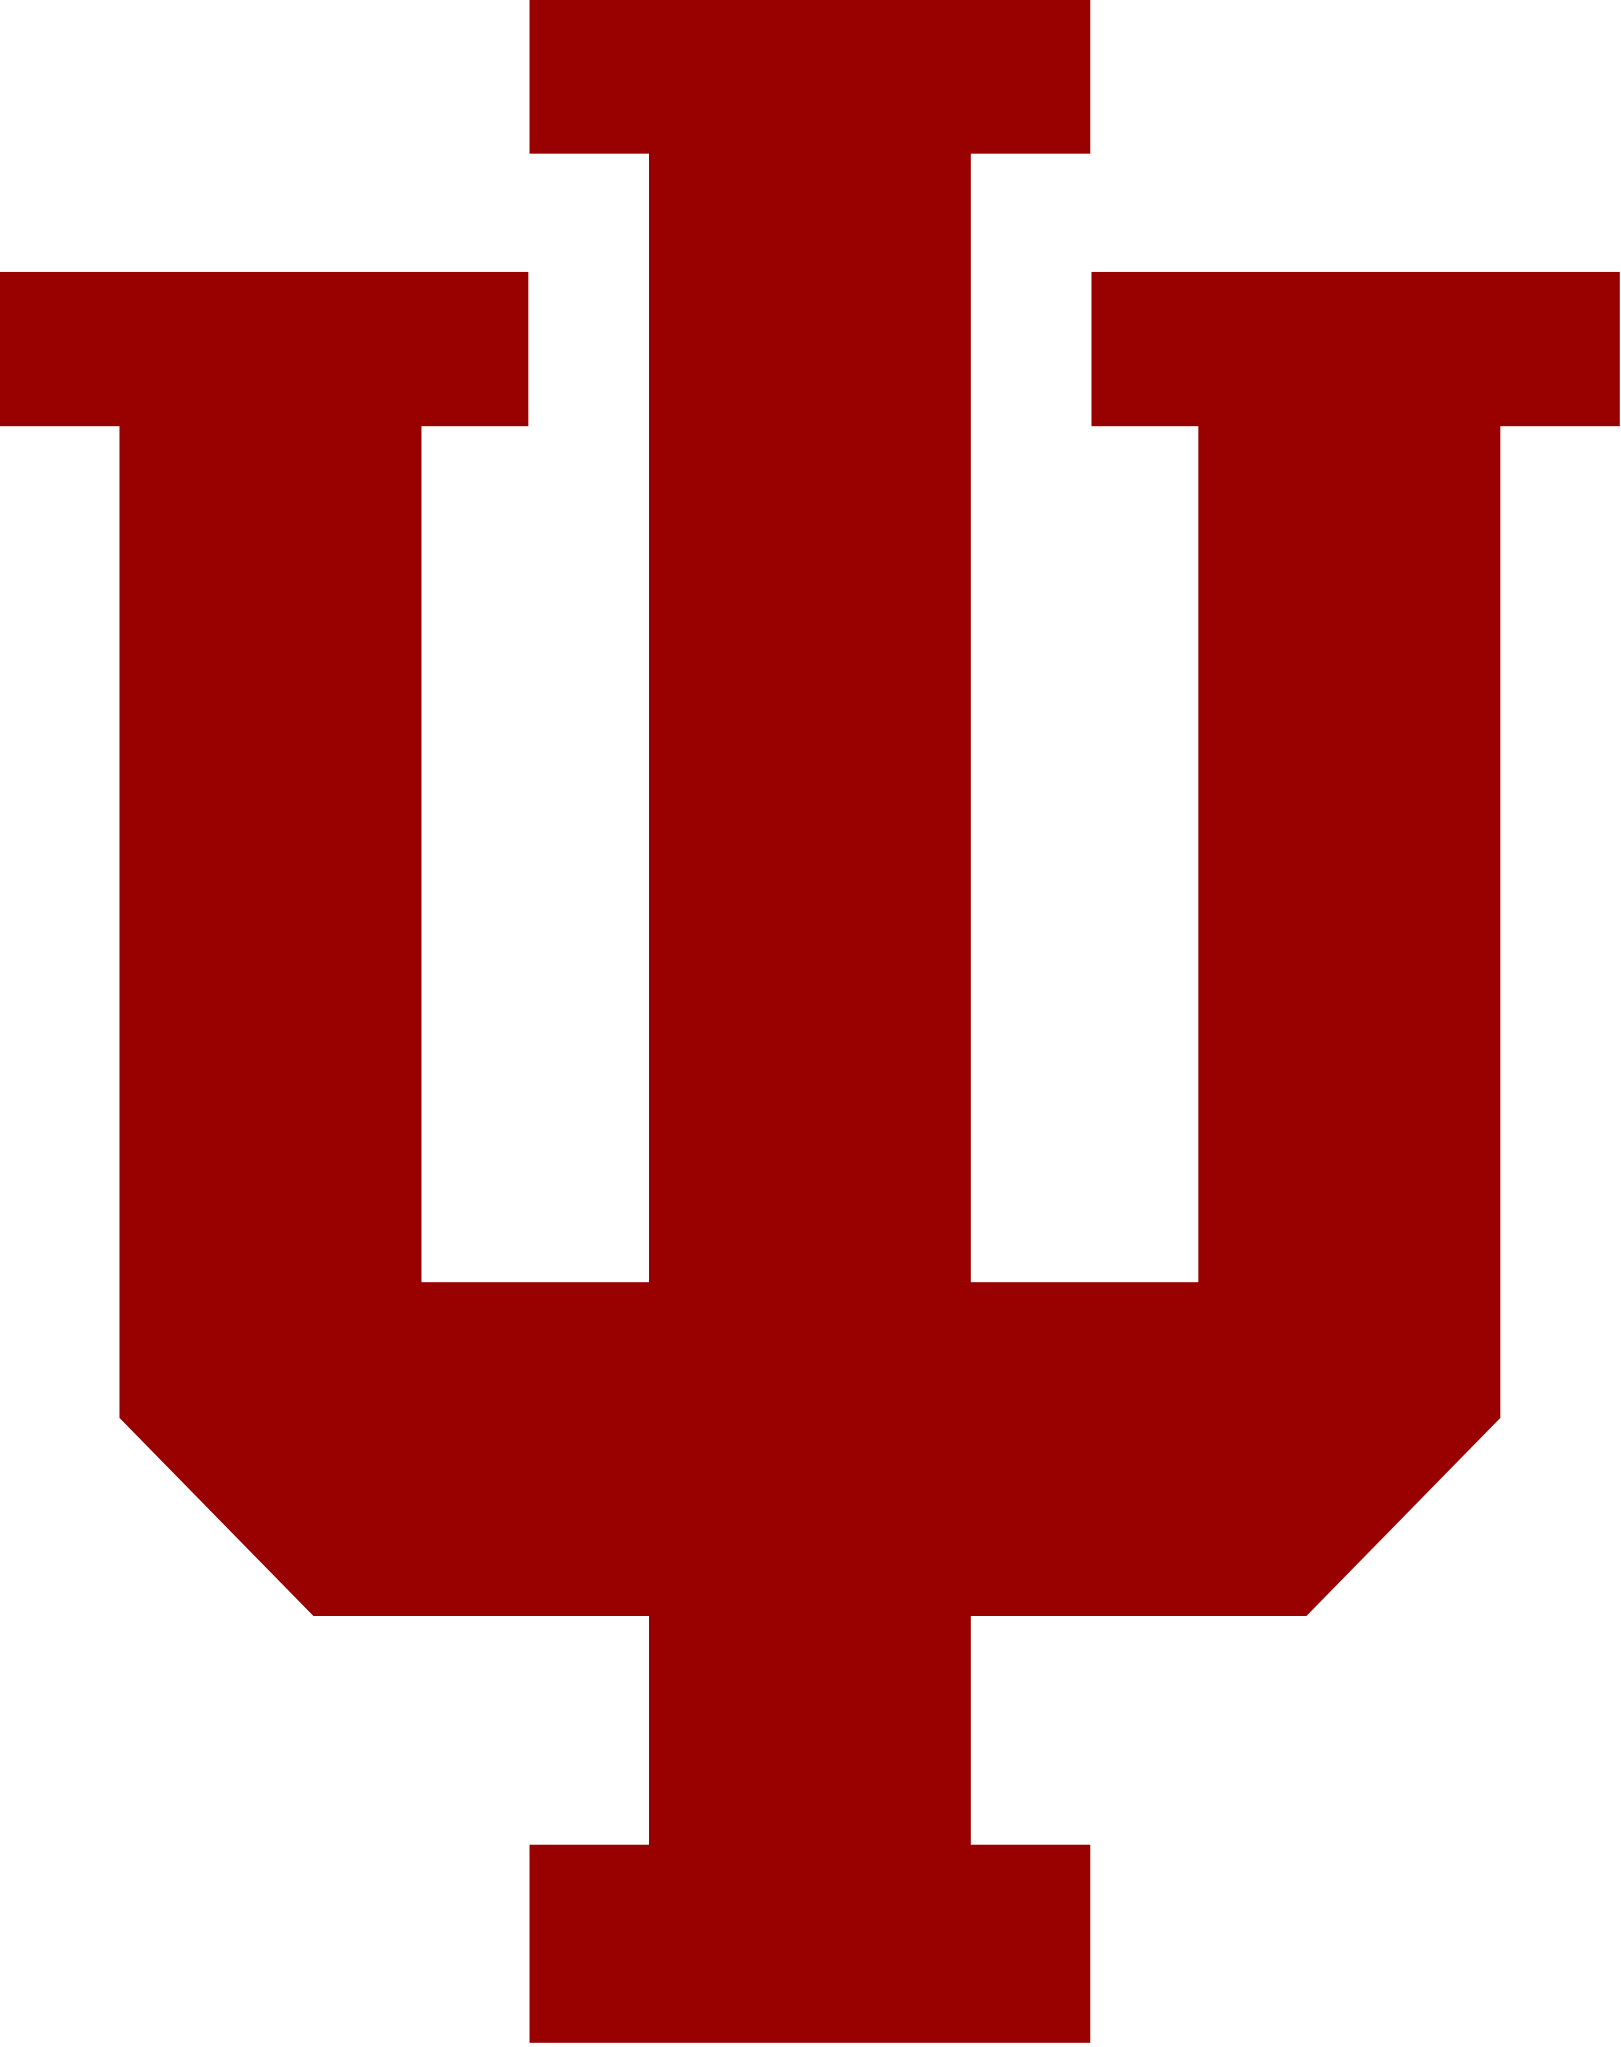 Indiana_Hoosiers_logo.png